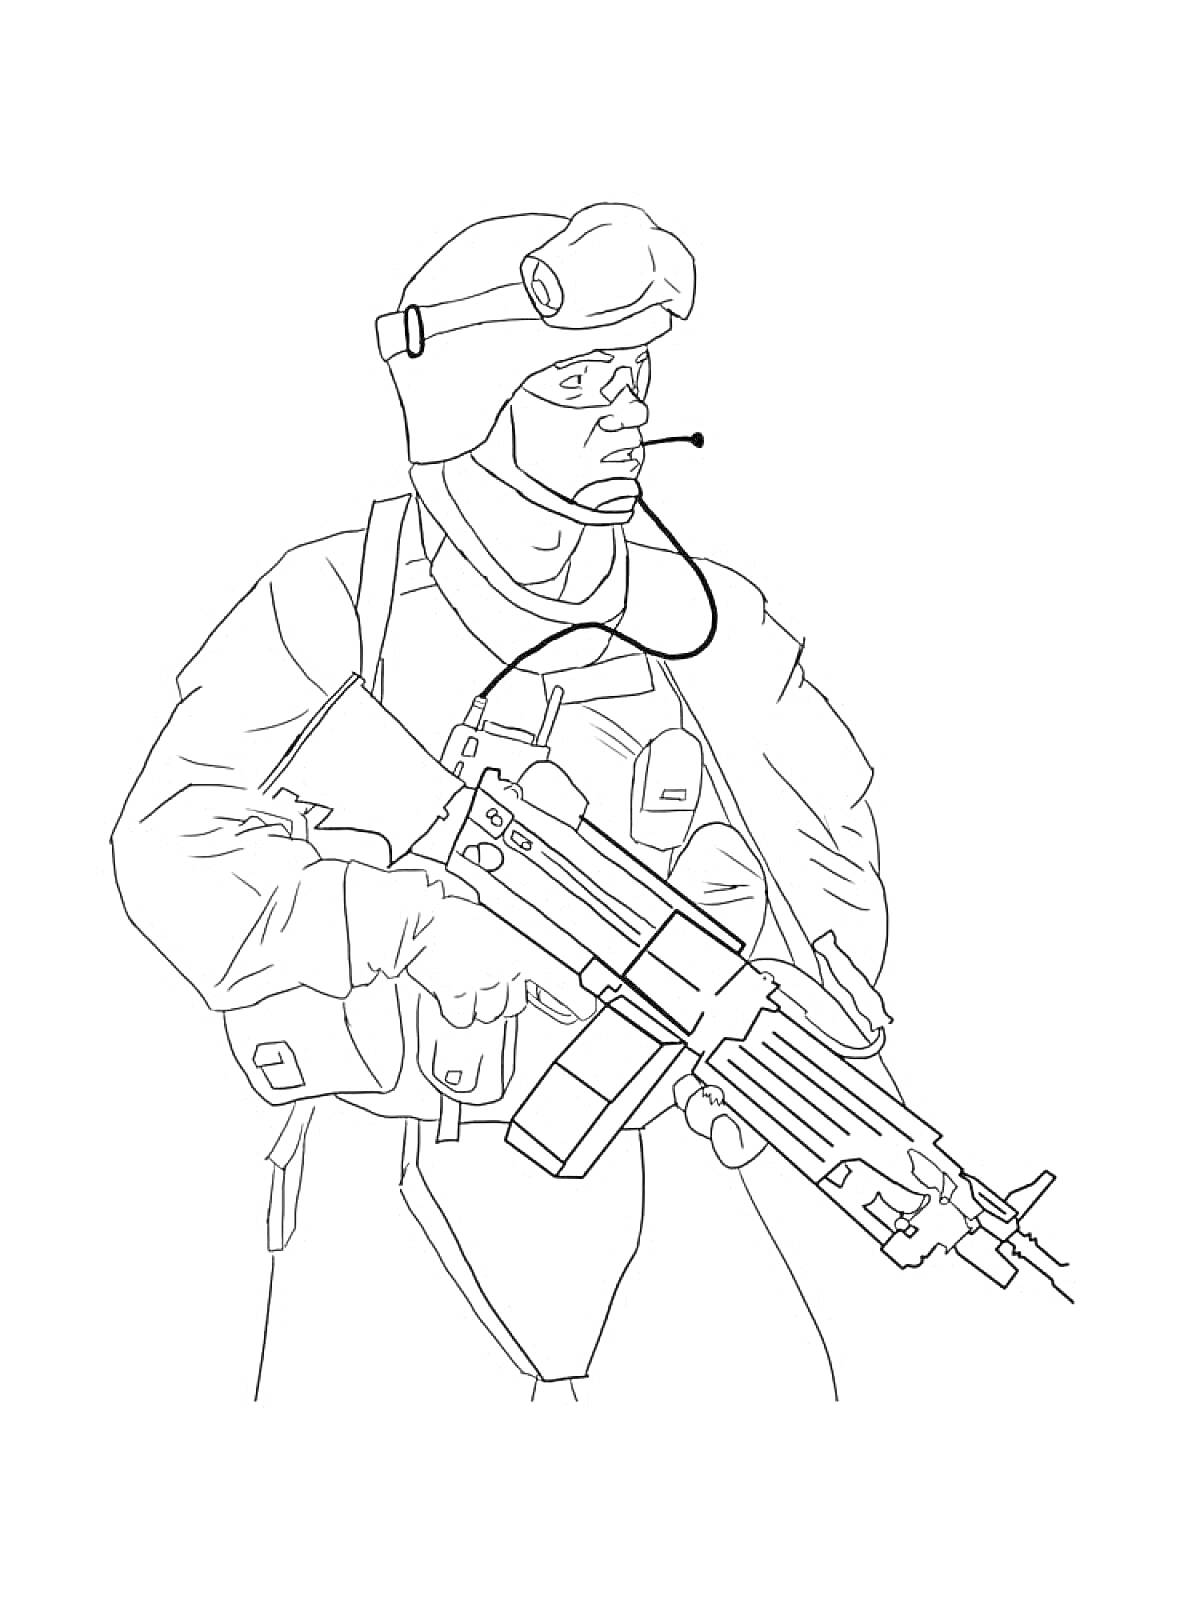 РаскраскаСолдат в шлеме с микрофоном и штурмовой винтовкой